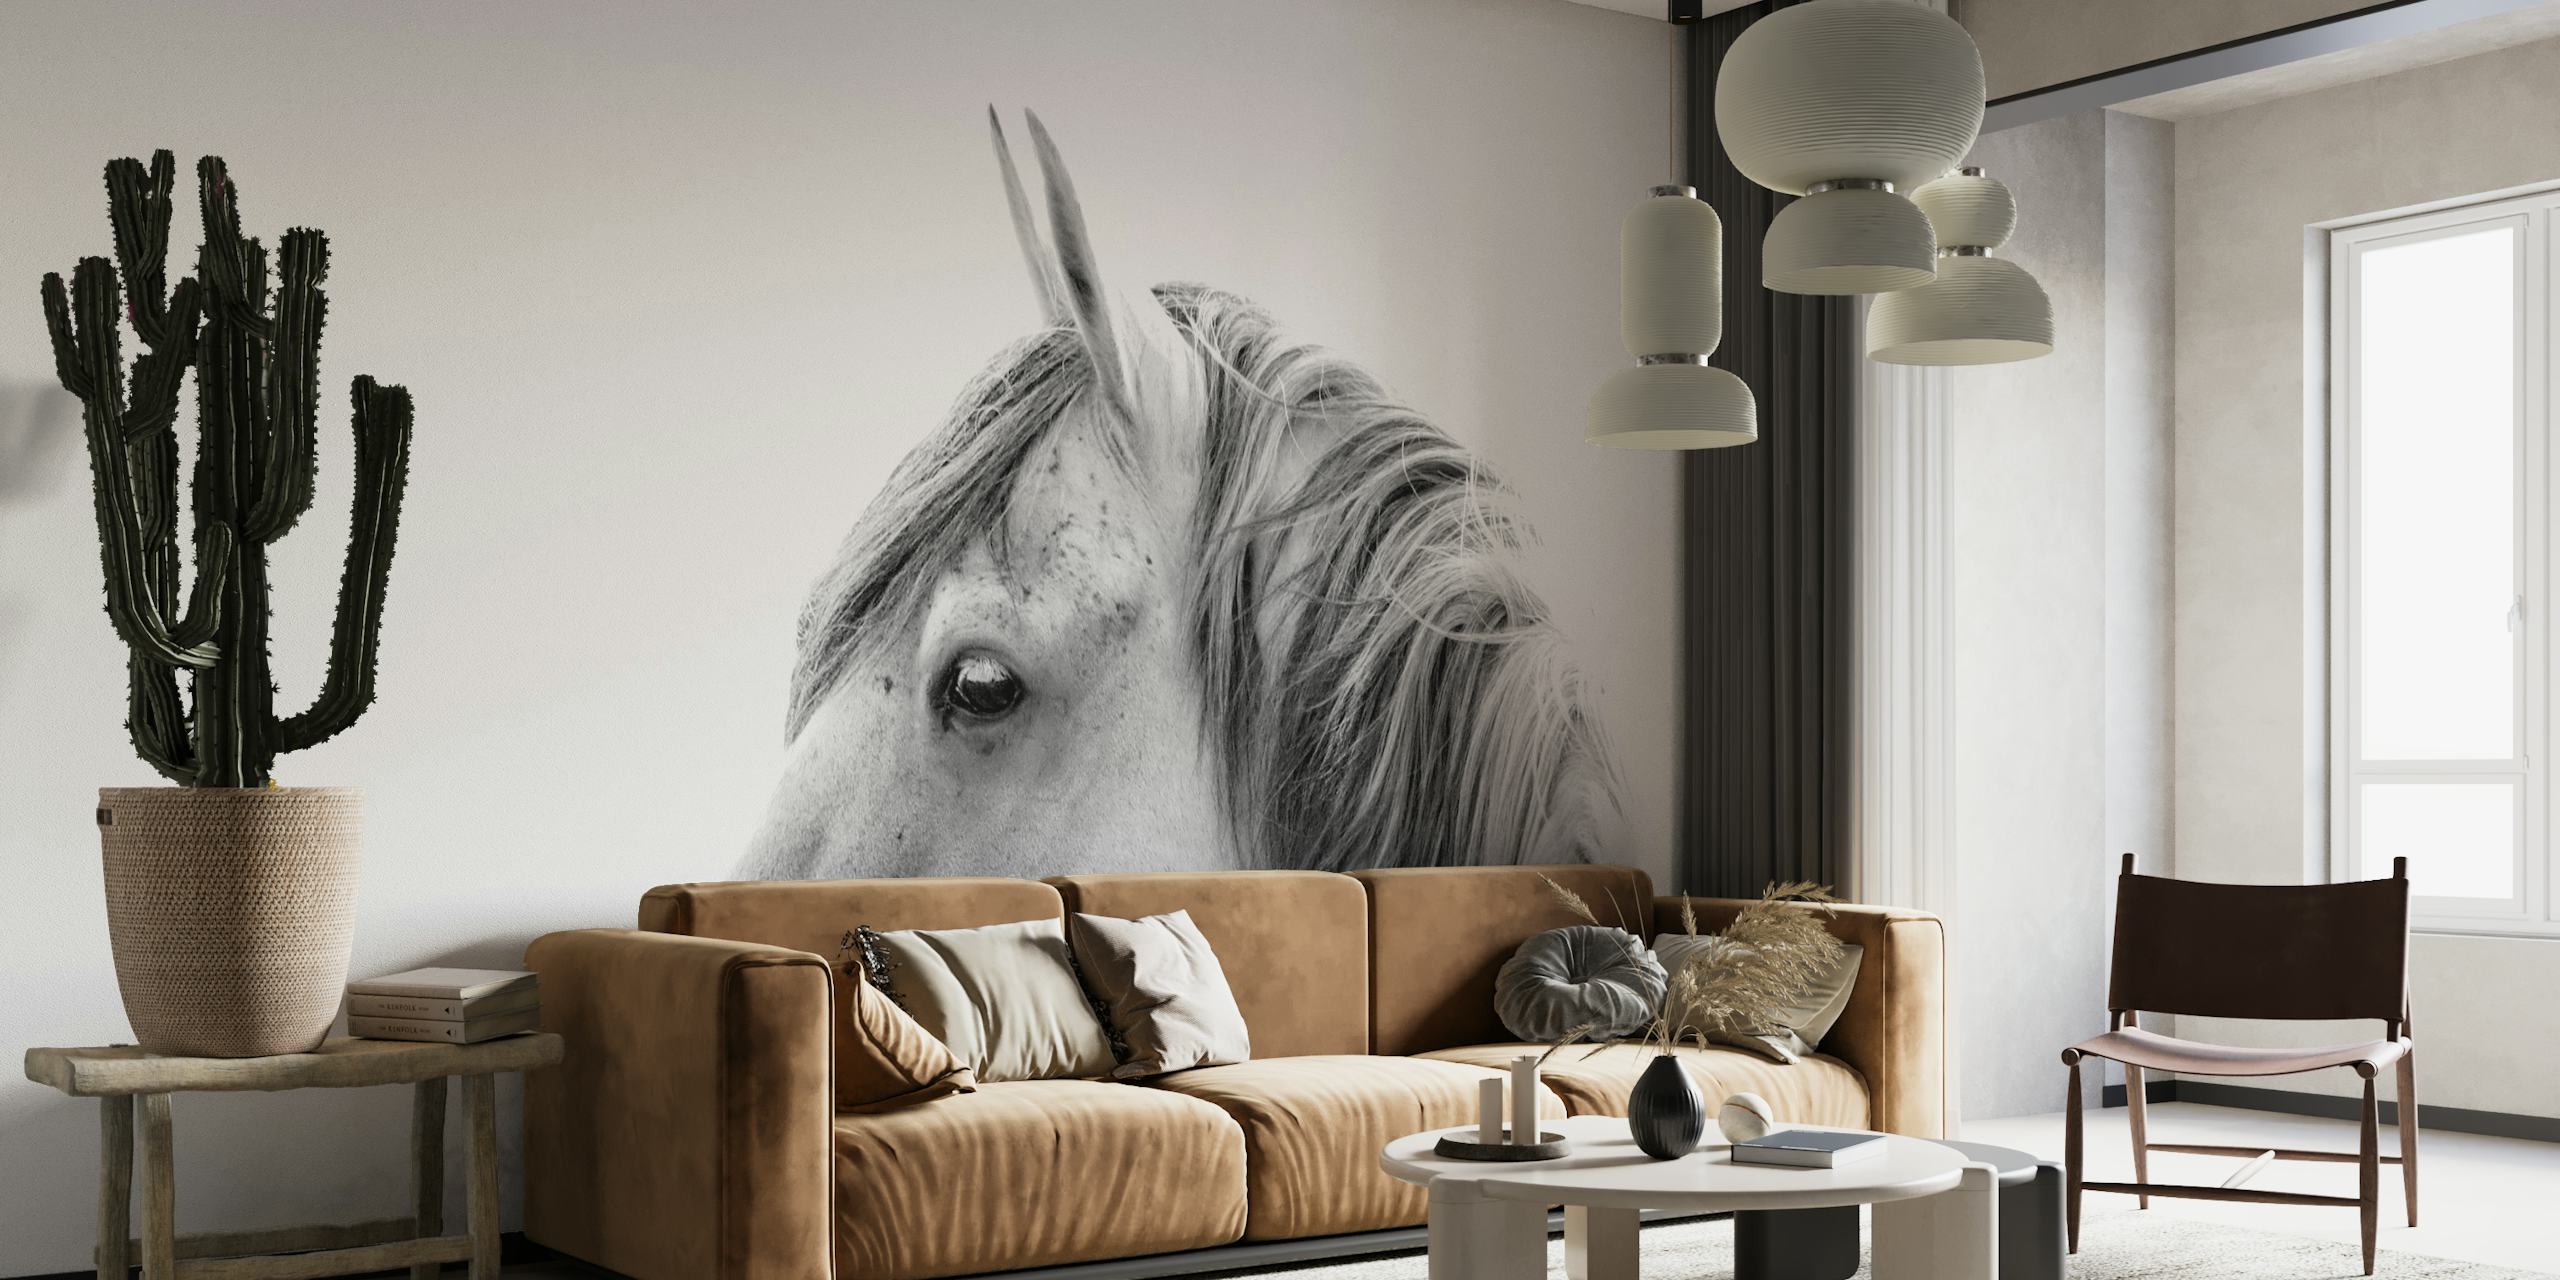 Fotografia preto e branco elegante de um cavalo de perfil